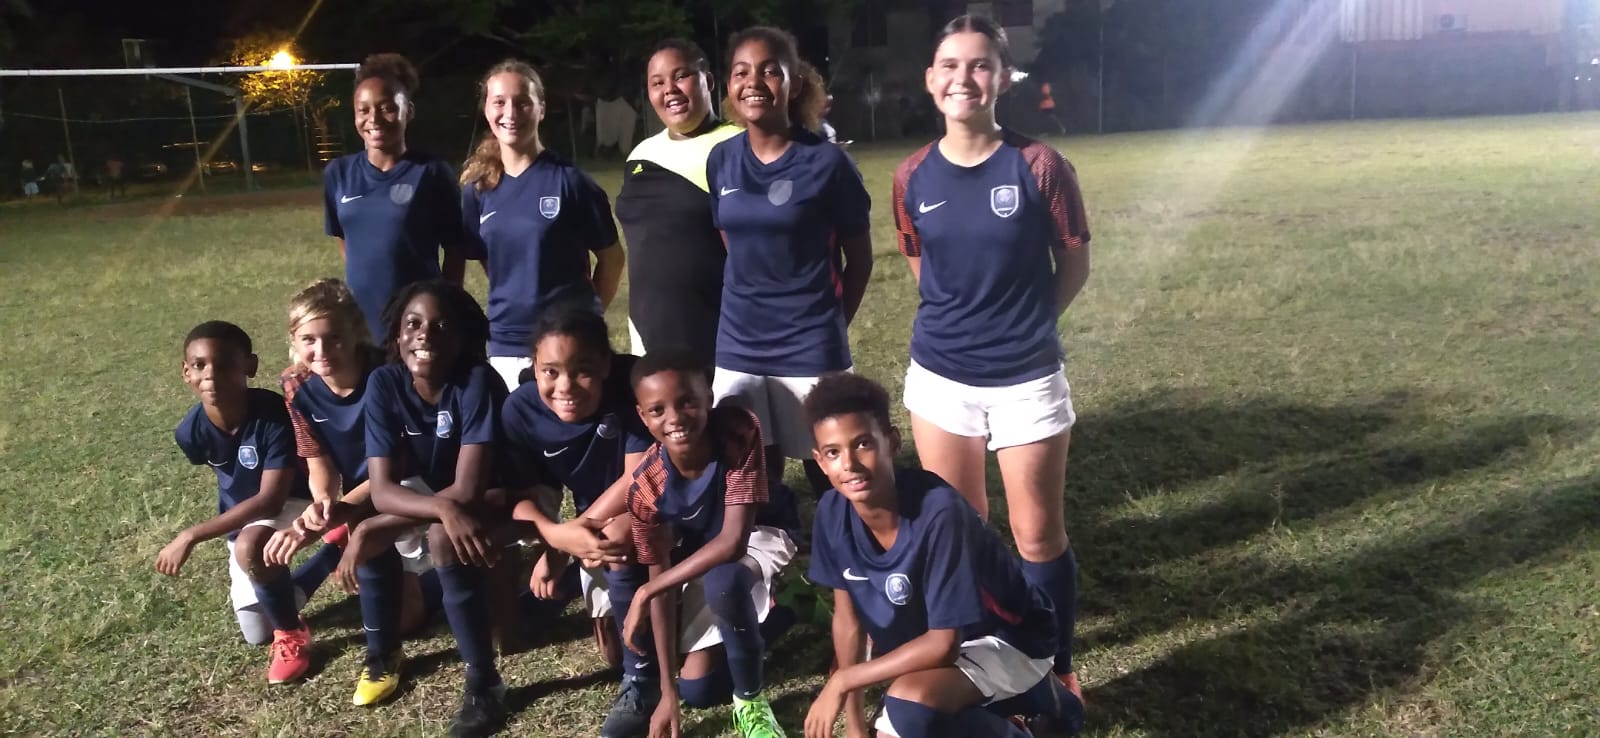     Football : 22 jeunes filles et garçons s’envolent pour la Paris Saint-Germain Academy Cup

